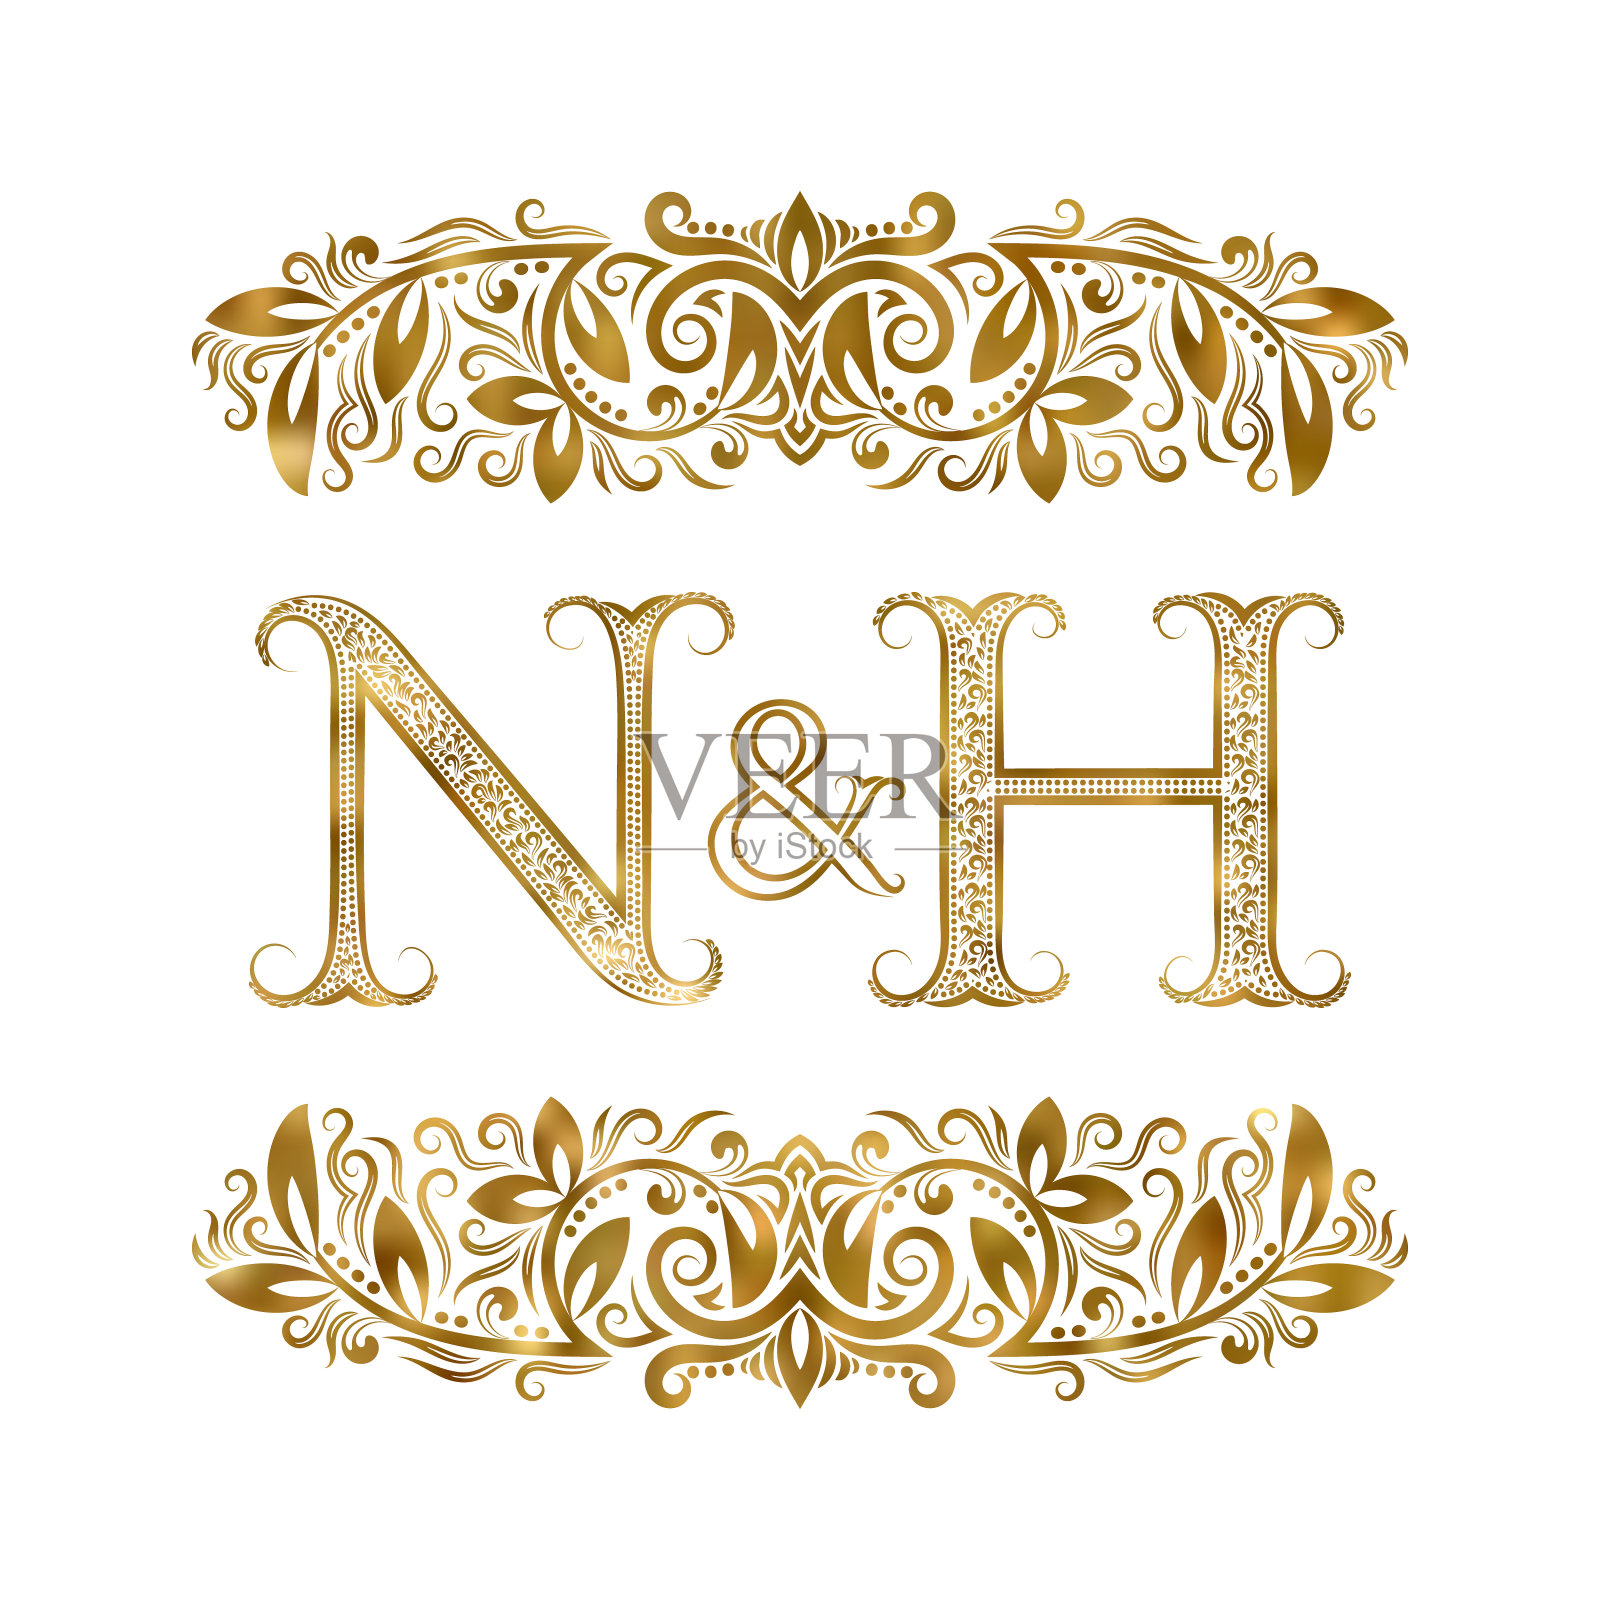 N和H复古首字母符号。字母周围有装饰元素。皇室风格的婚礼或商业伙伴的字母组合。插画图片素材